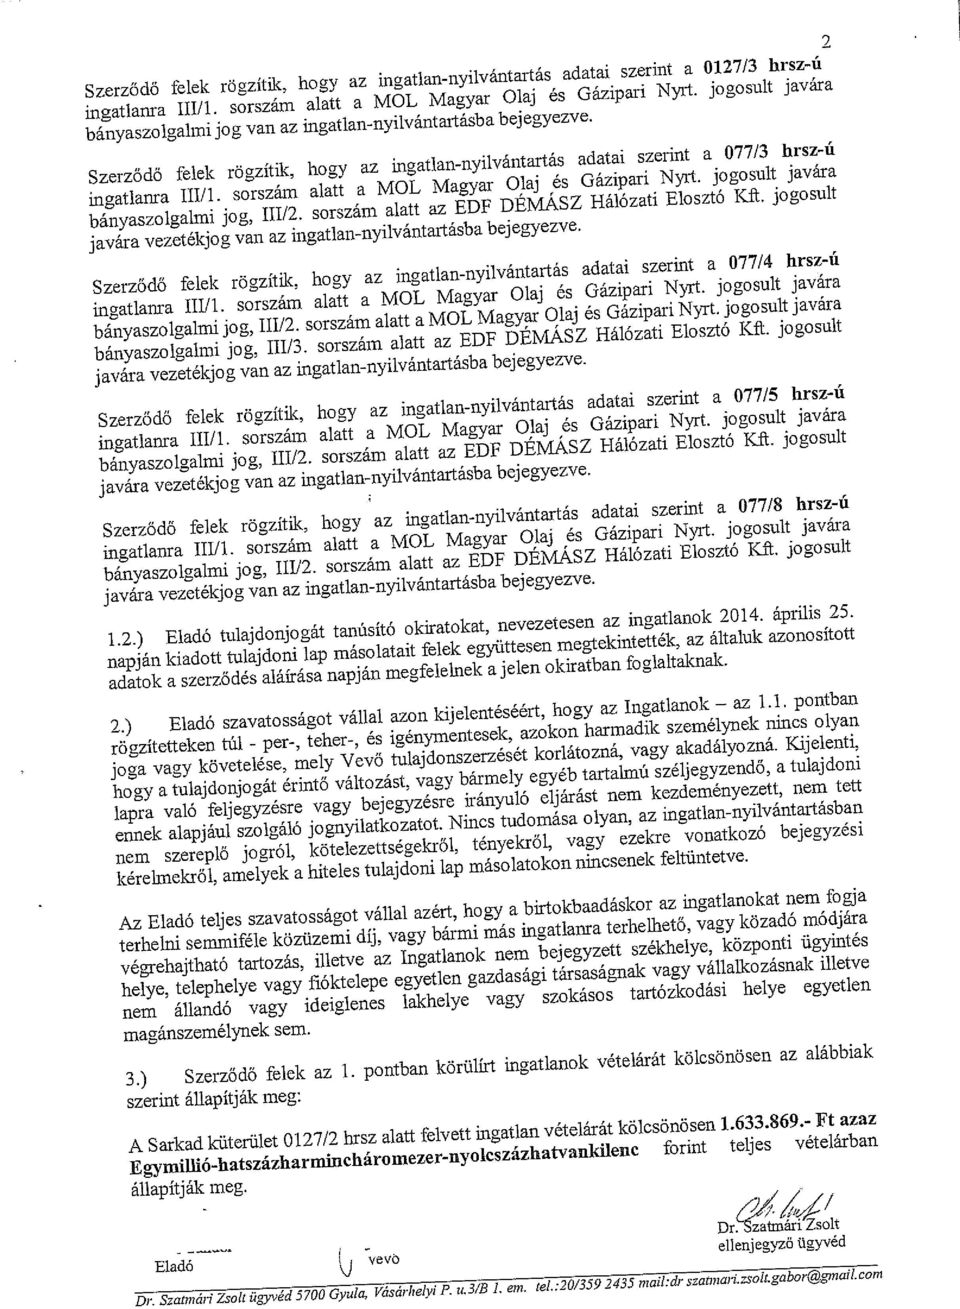 sorszám alatt a MOL Magyar Olaj és Gázipari Nyrt. jogosult javára bányaszolgalmi jog, 111/2. sorszám alatt az EUF DE~SZ Hálózati Elosztó K~.